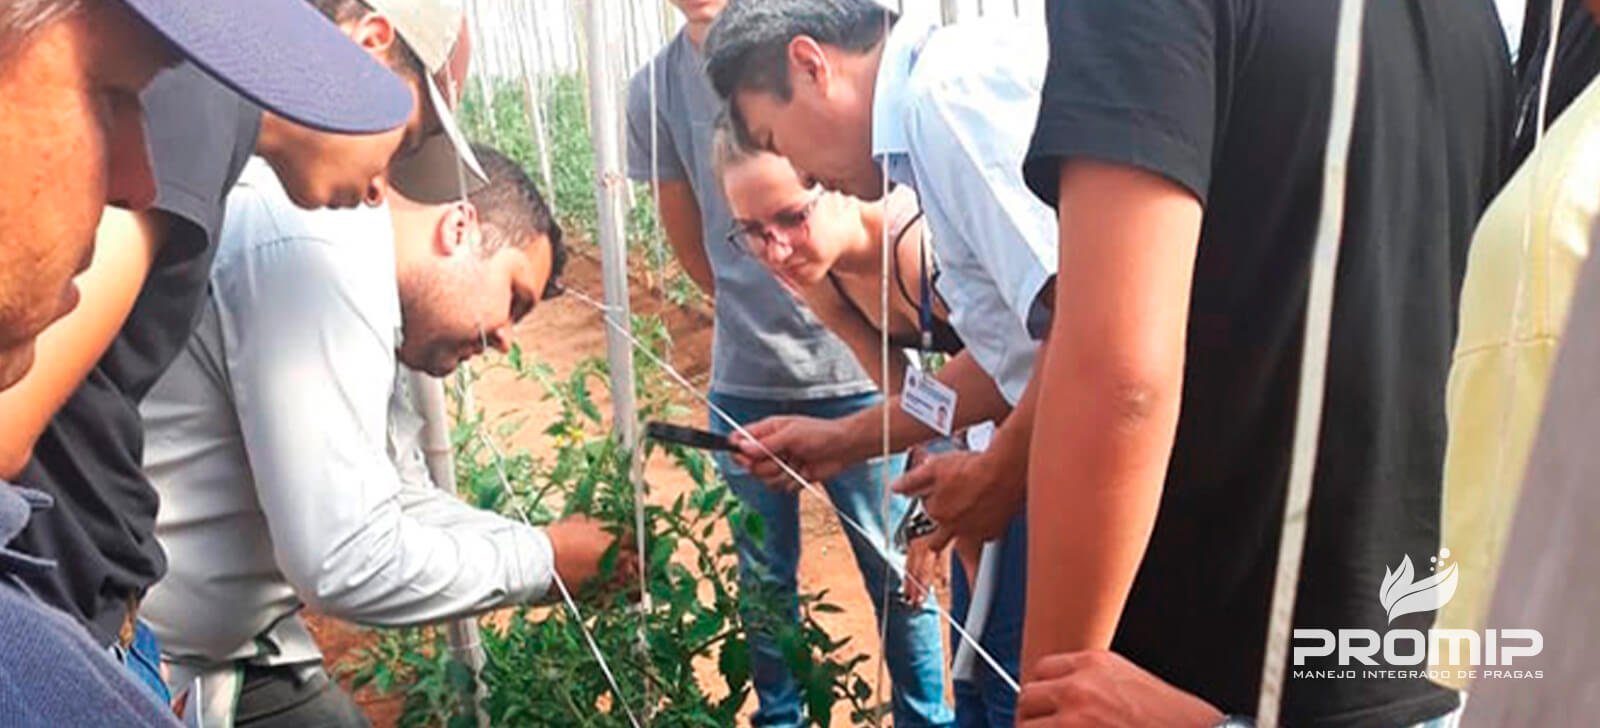 PROMIP realiza treinamentos em manejo integrado de pragas a produtores da região de Marília